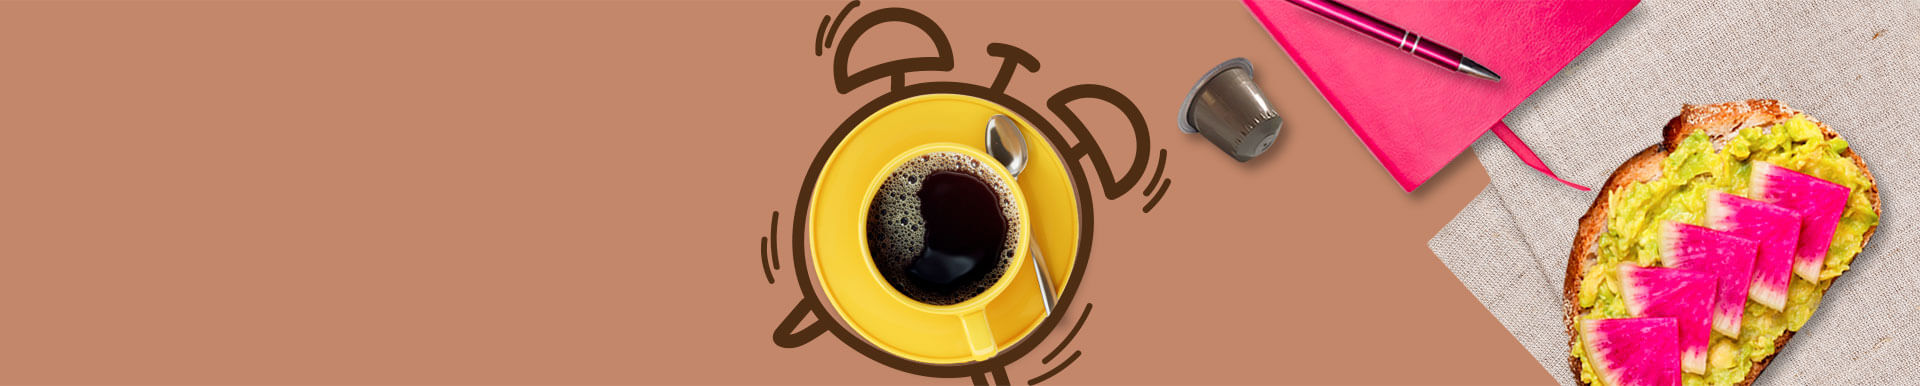 Capsule Nespresso 100% orzo